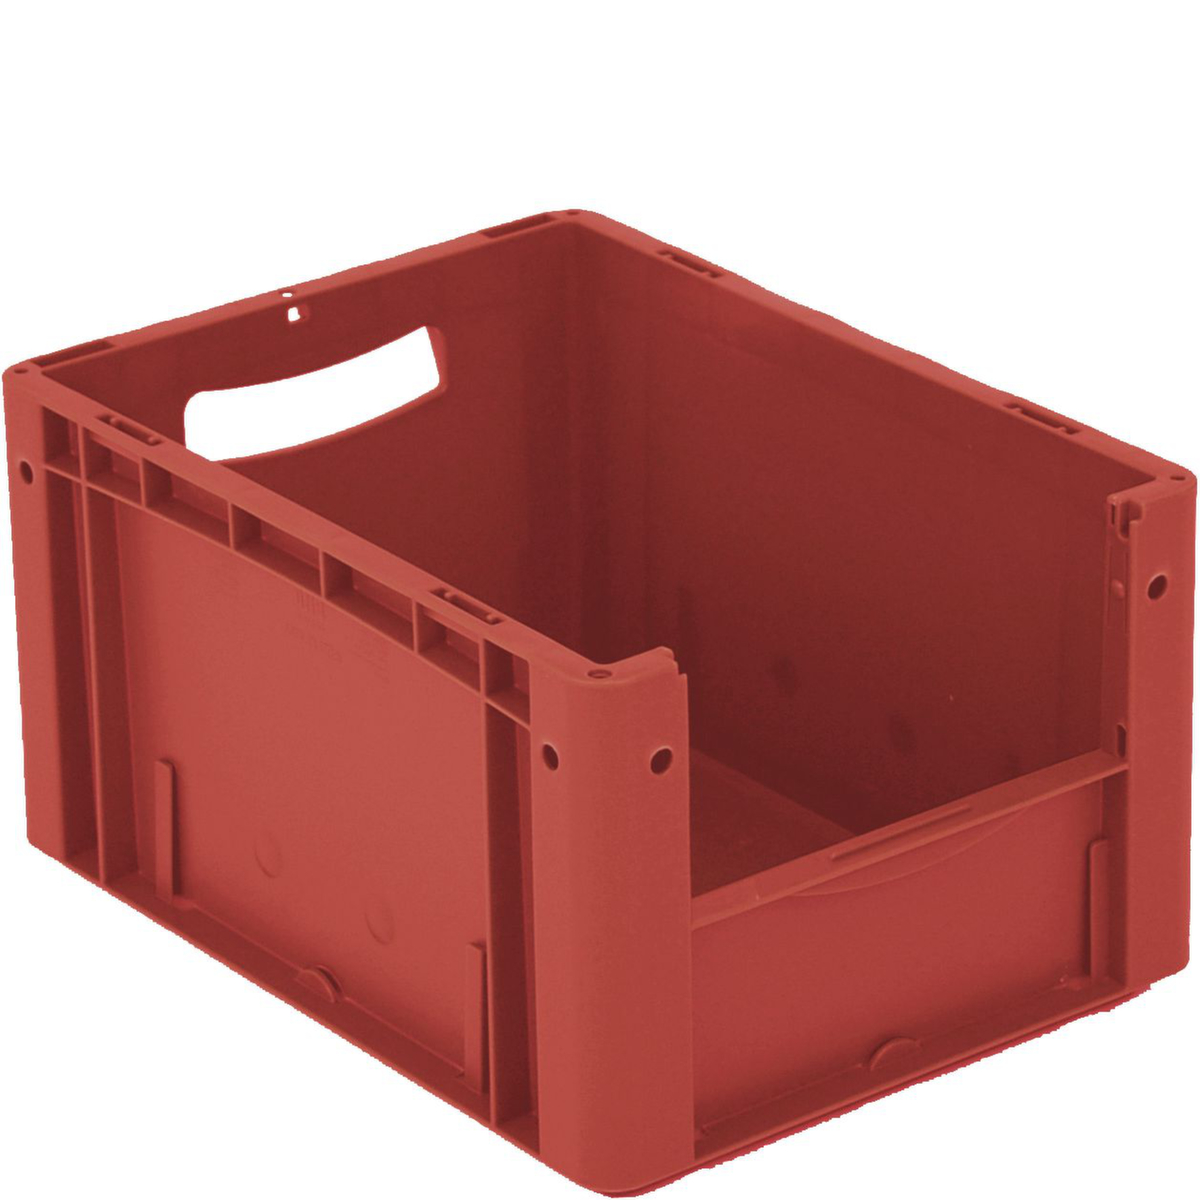 Euronorm zichtbare opslagcontainer met toegangsopening, rood, HxLxB 220x400x300 mm  ZOOM